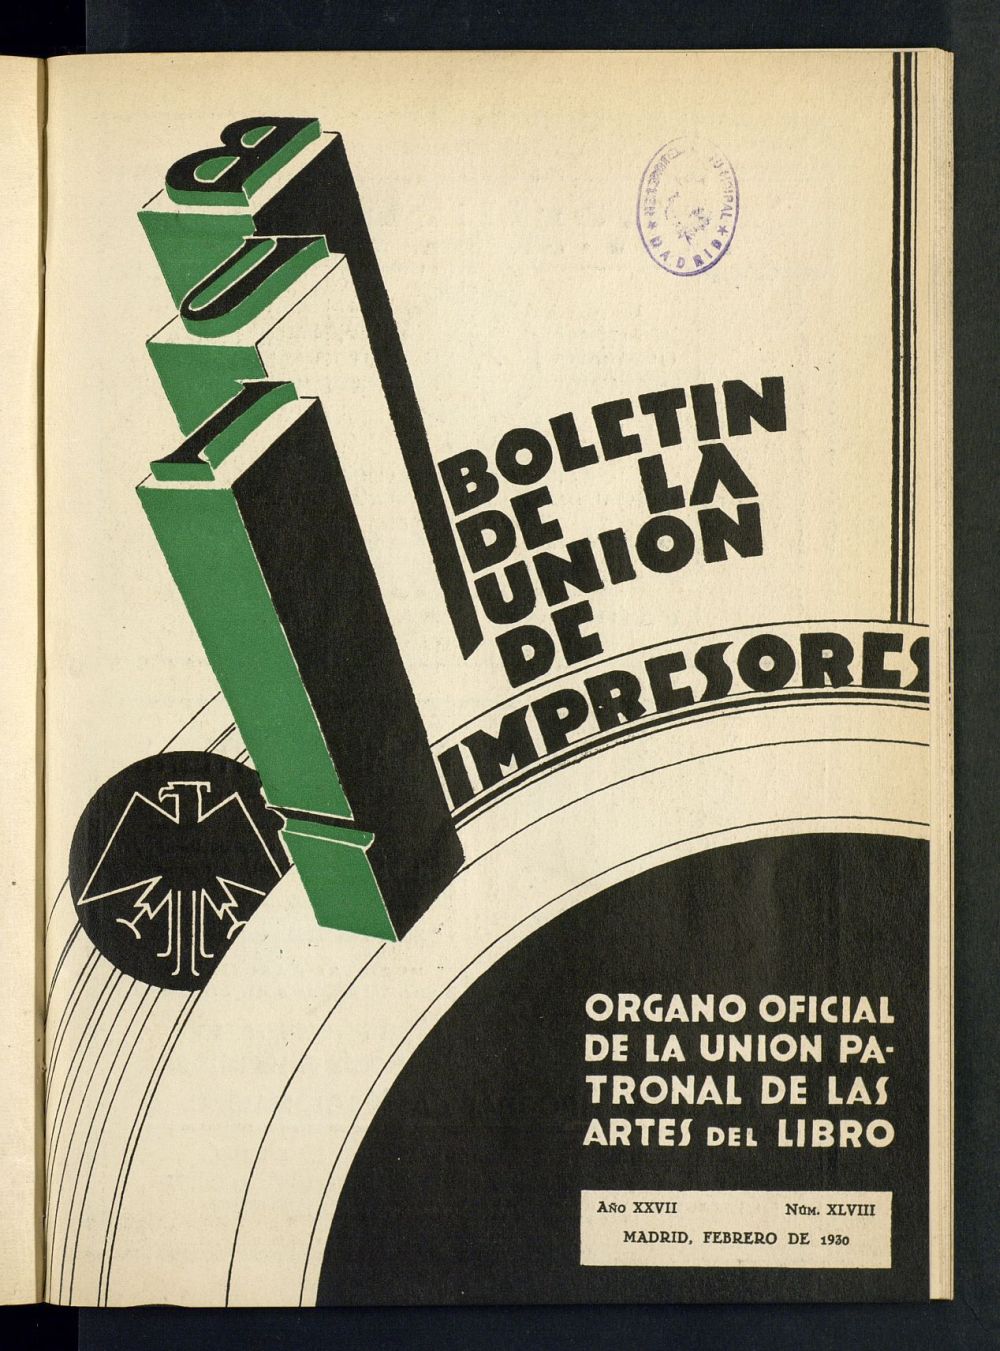 Boletn de la unin de impresores : rgano de la unin patronal de las artes del libro de febrero de 1930